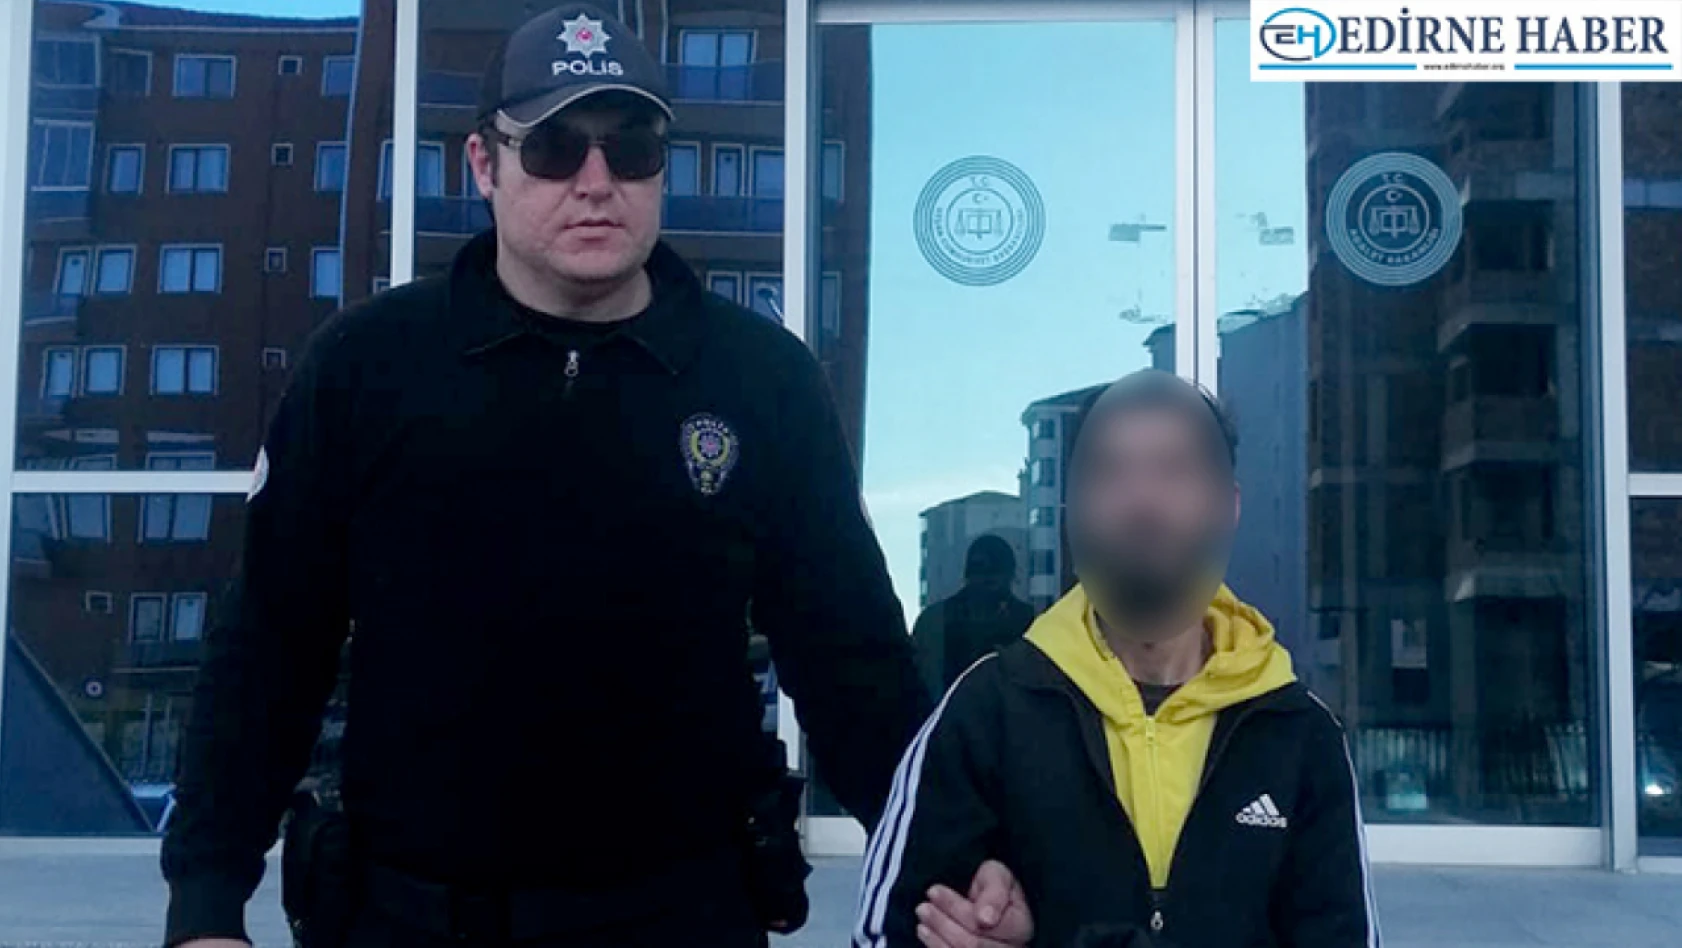 Edirne'de bir evden çeyizlik eşya çalan şüpheli tutuklandı